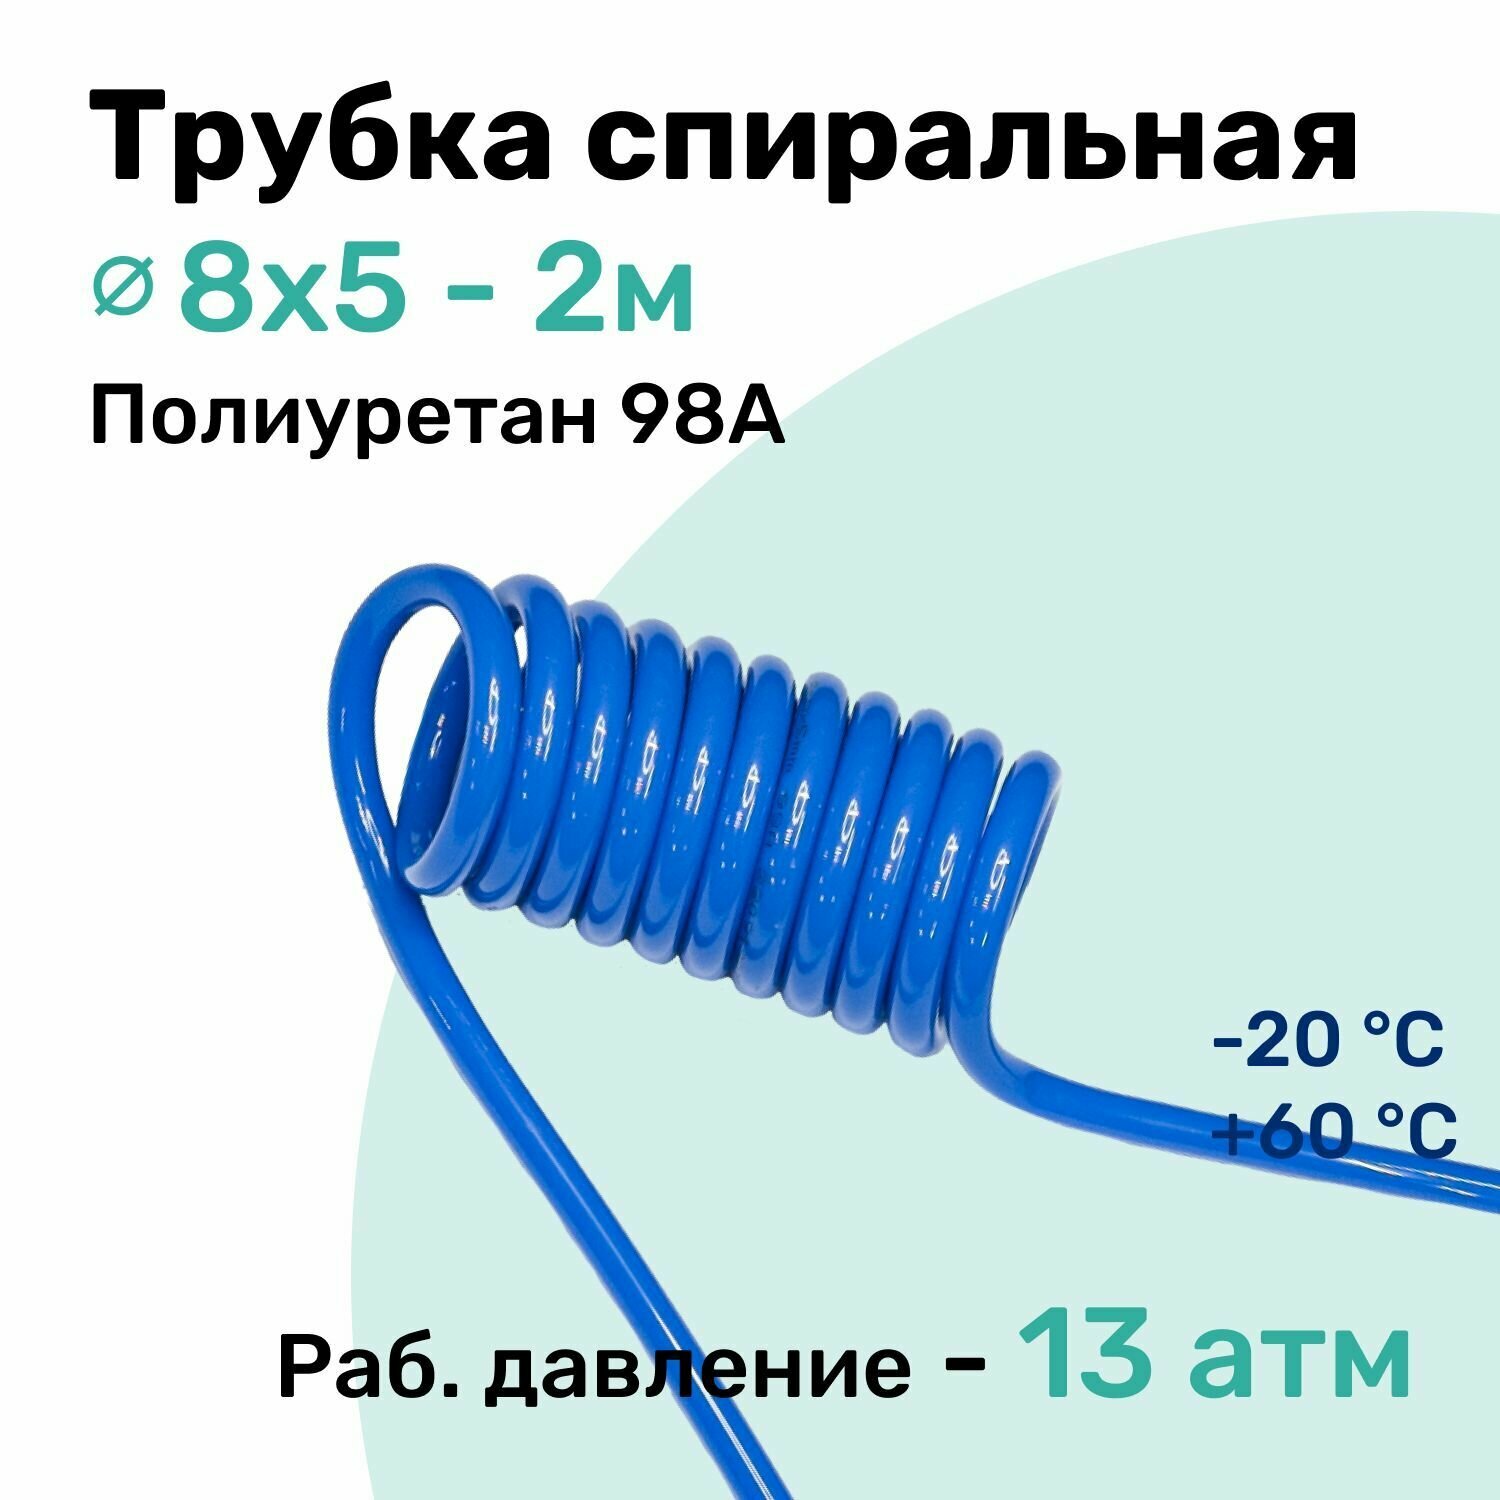 Пневмотрубка спиральная 8x5мм полиуретановая PU98A 2м 13 атм Синий Шланг спиральный пневматический NBPT